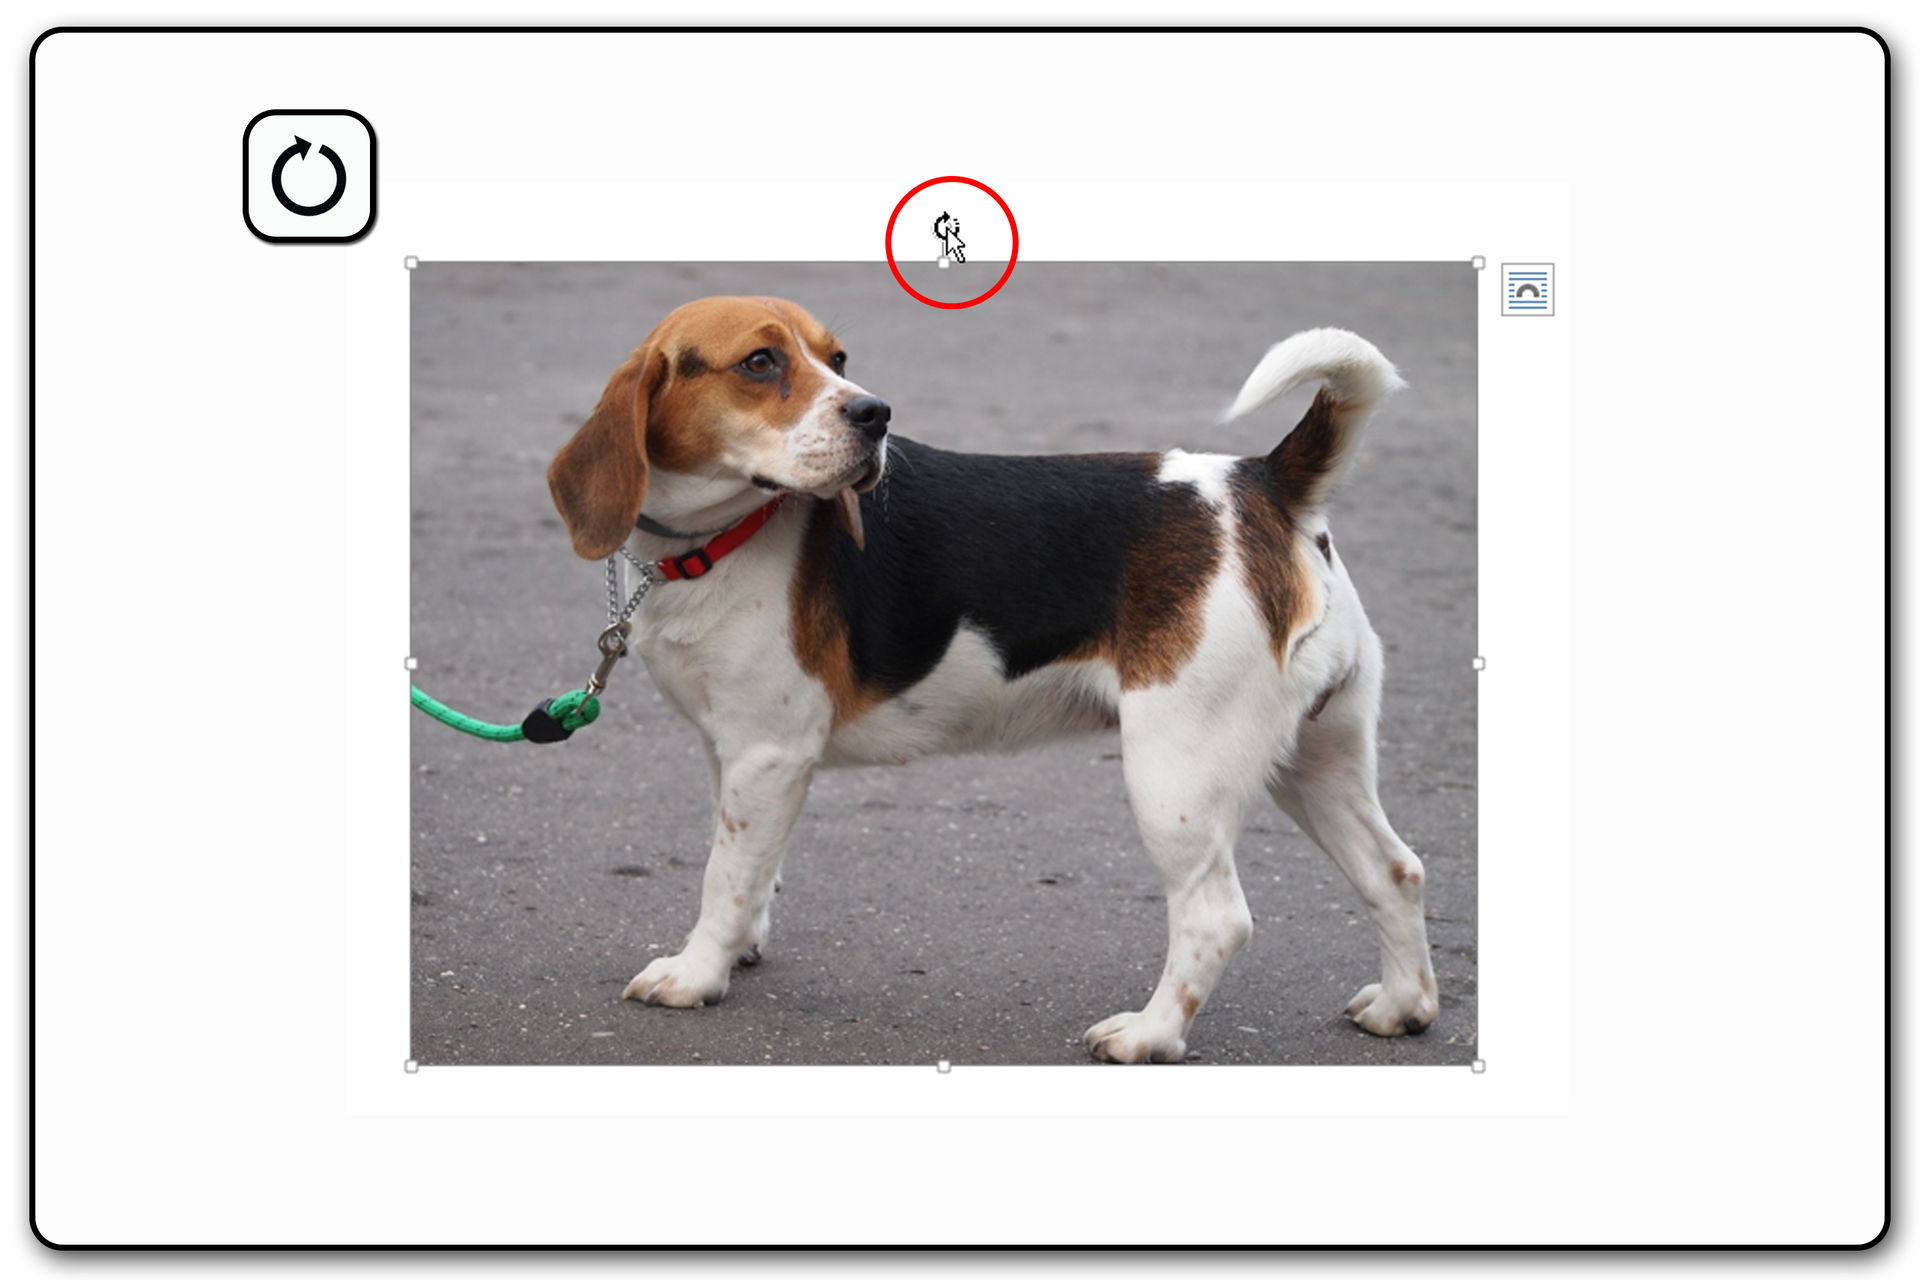 Zrzut ekranu przykładowej prezentacji ze zdjęciem i widocznym uchwytem obrotu obrazu nad zaznaczonym obrazem.  Na zrzucie jest pies.